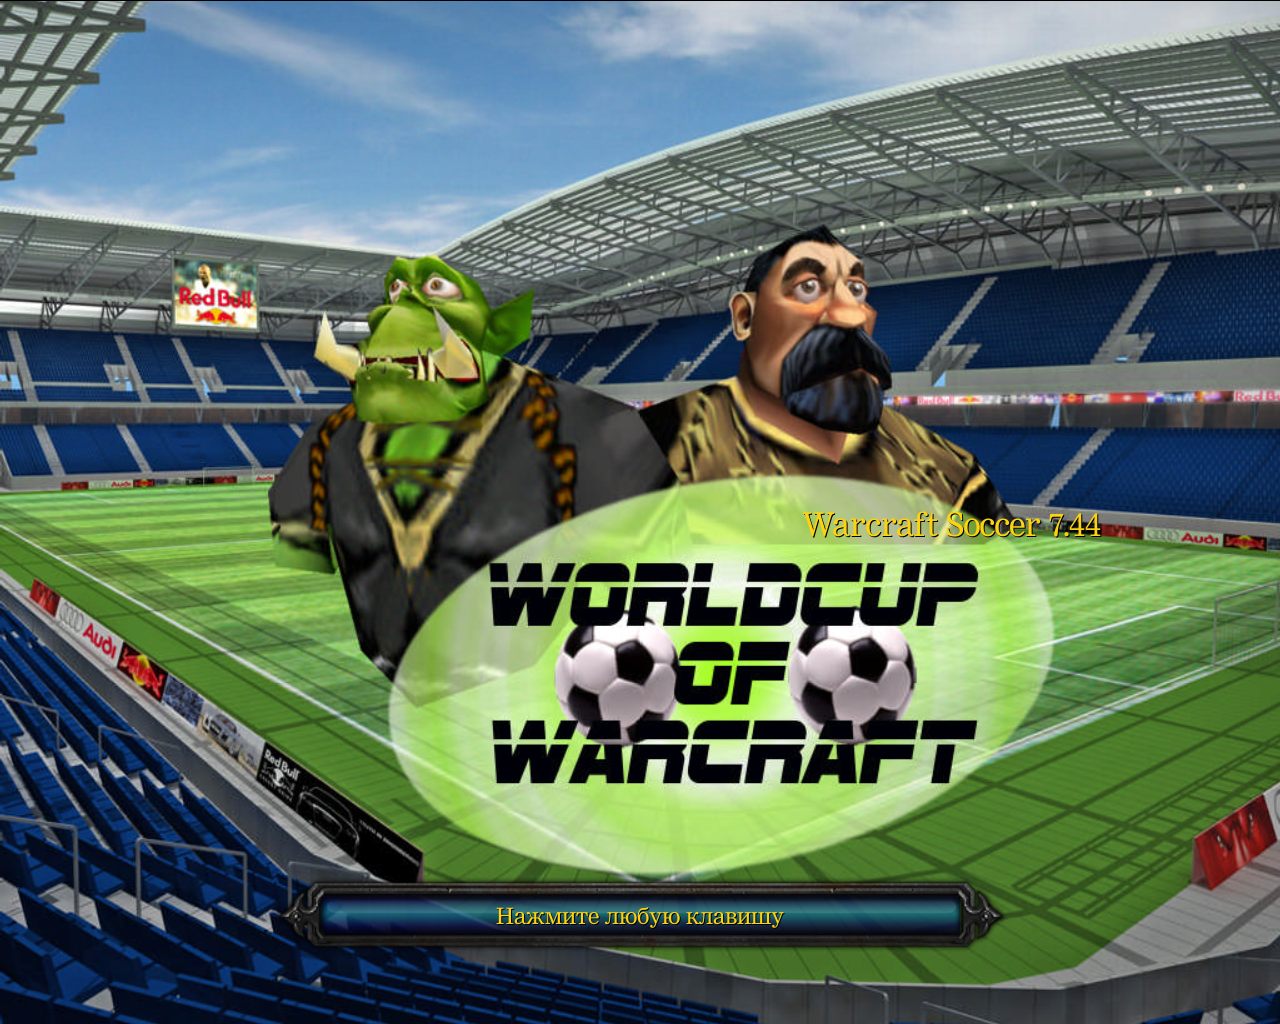 Warcraft Soccer